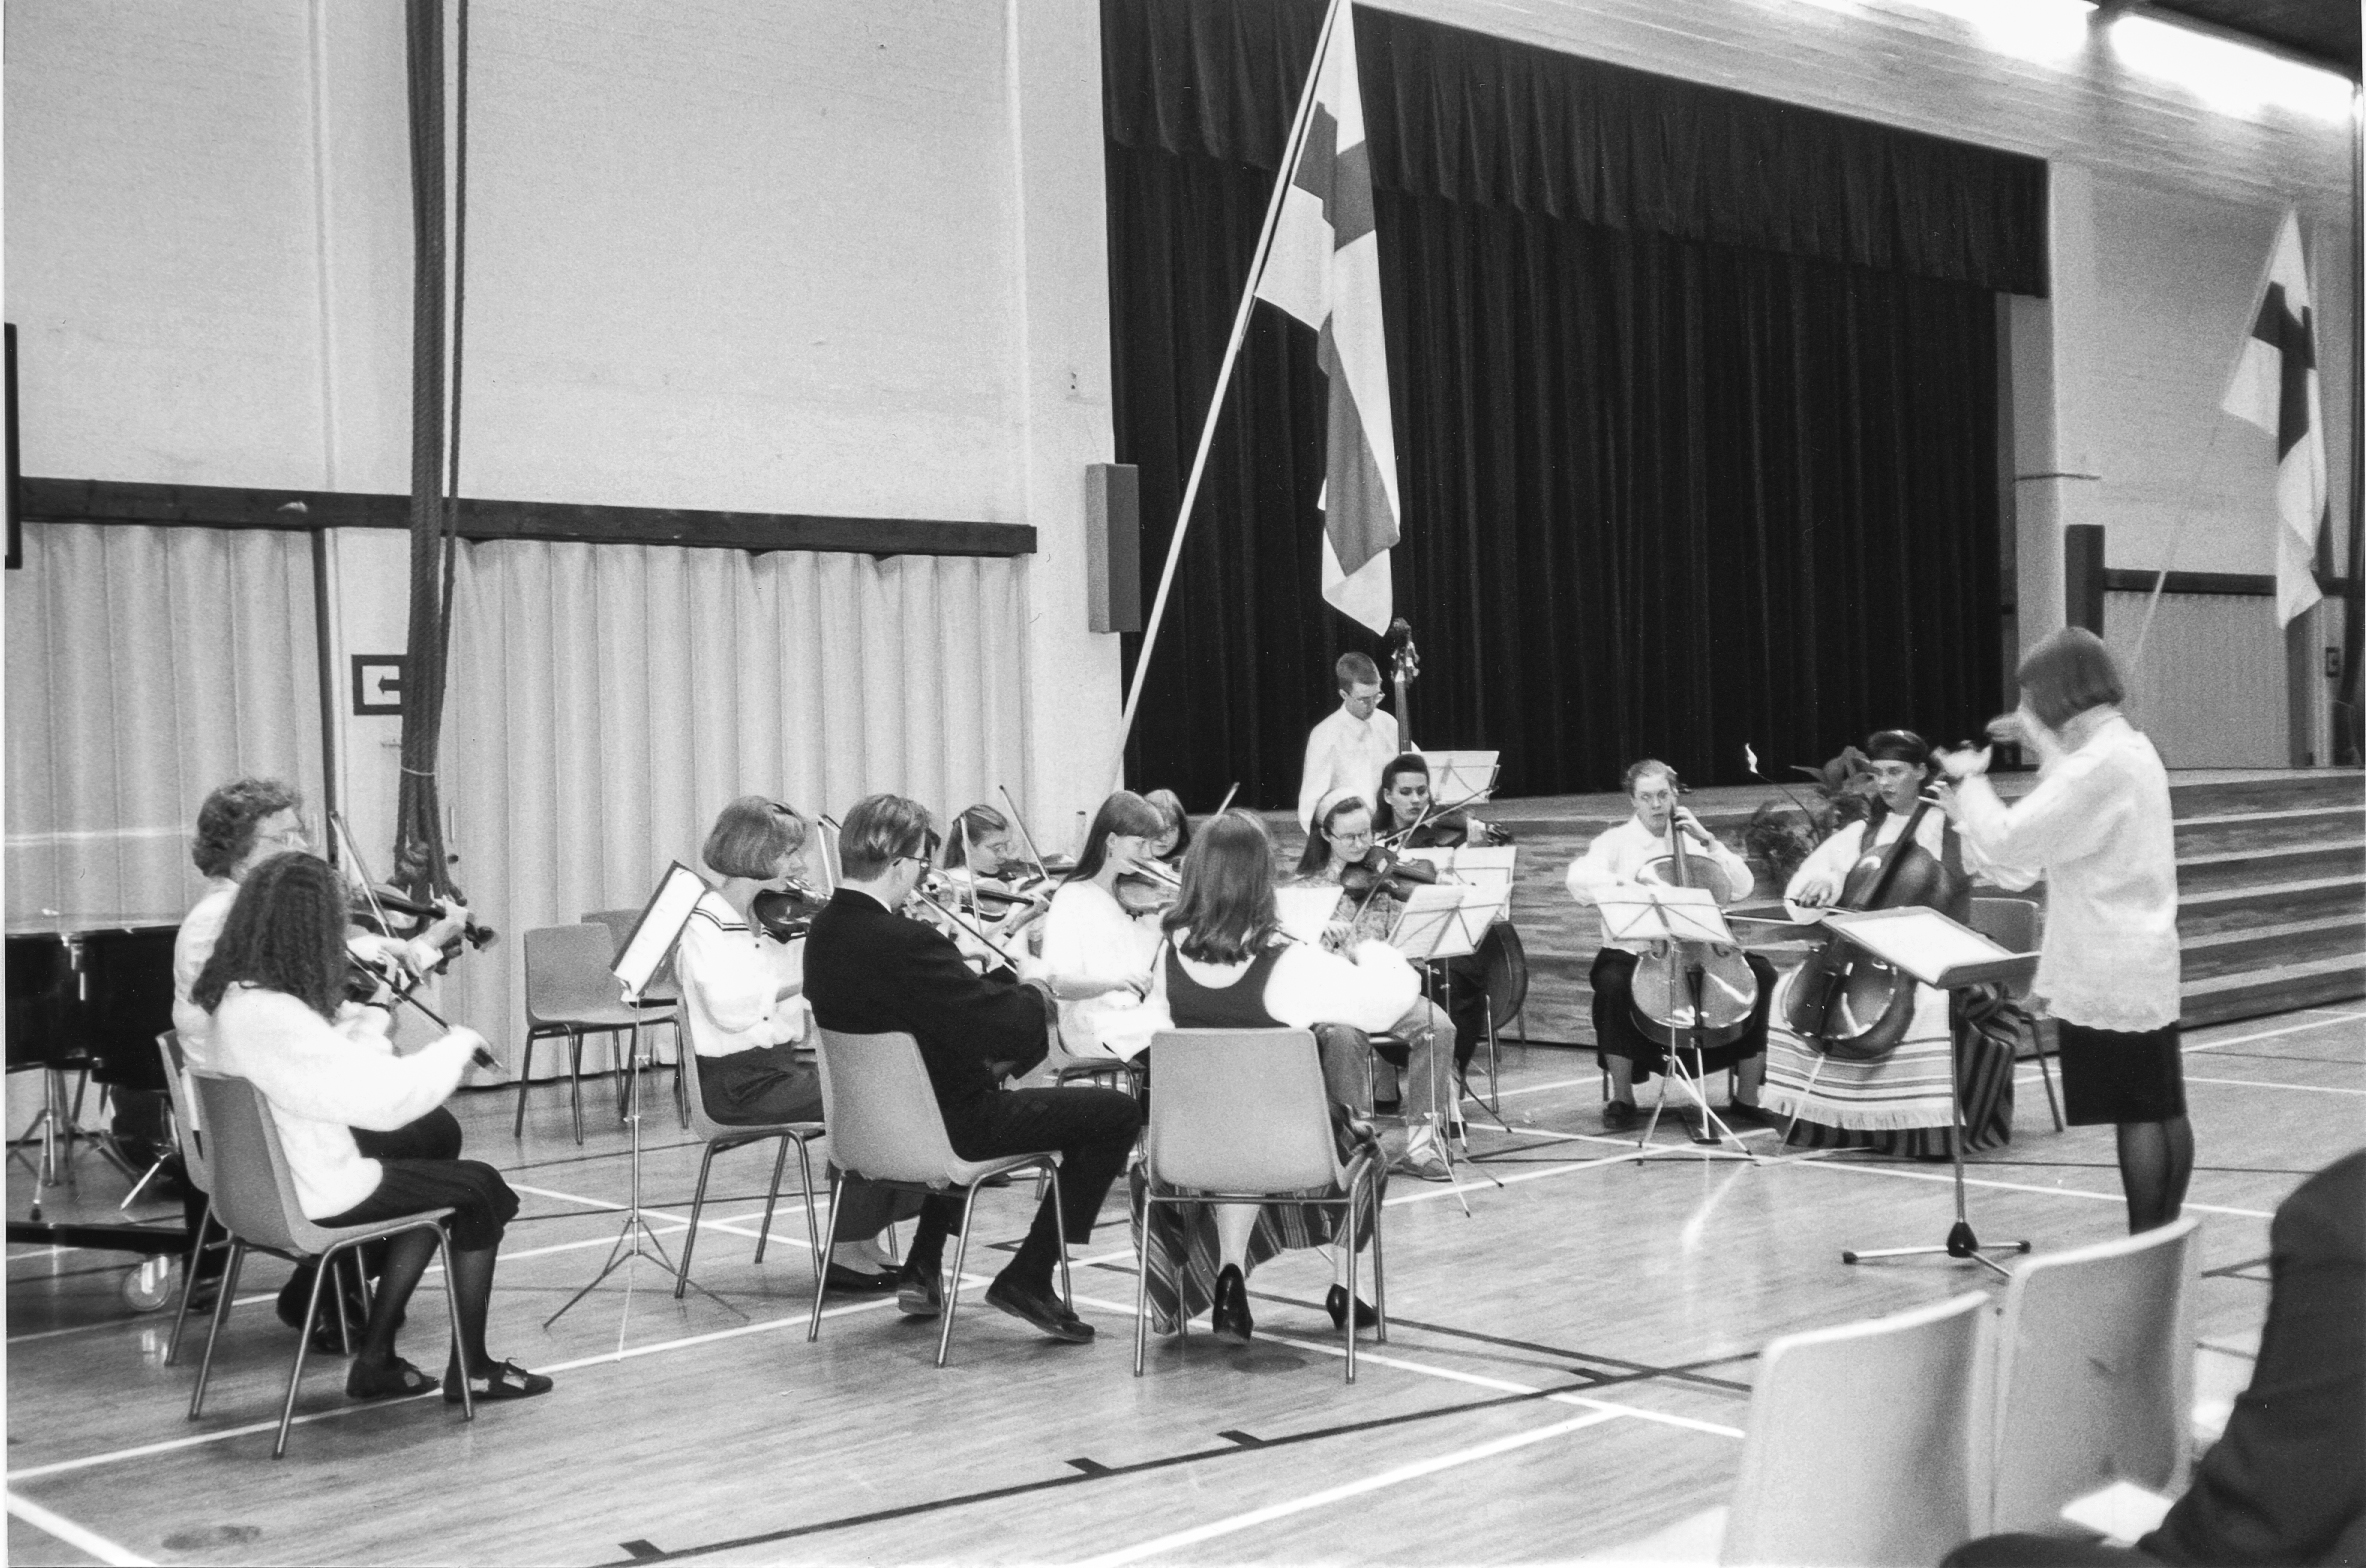 Orkesteri esiintyy juhlasalissa lavan vieressä permannolla opettajansa johdolla. Taustalla näkyy kaksi Suomen lippua.